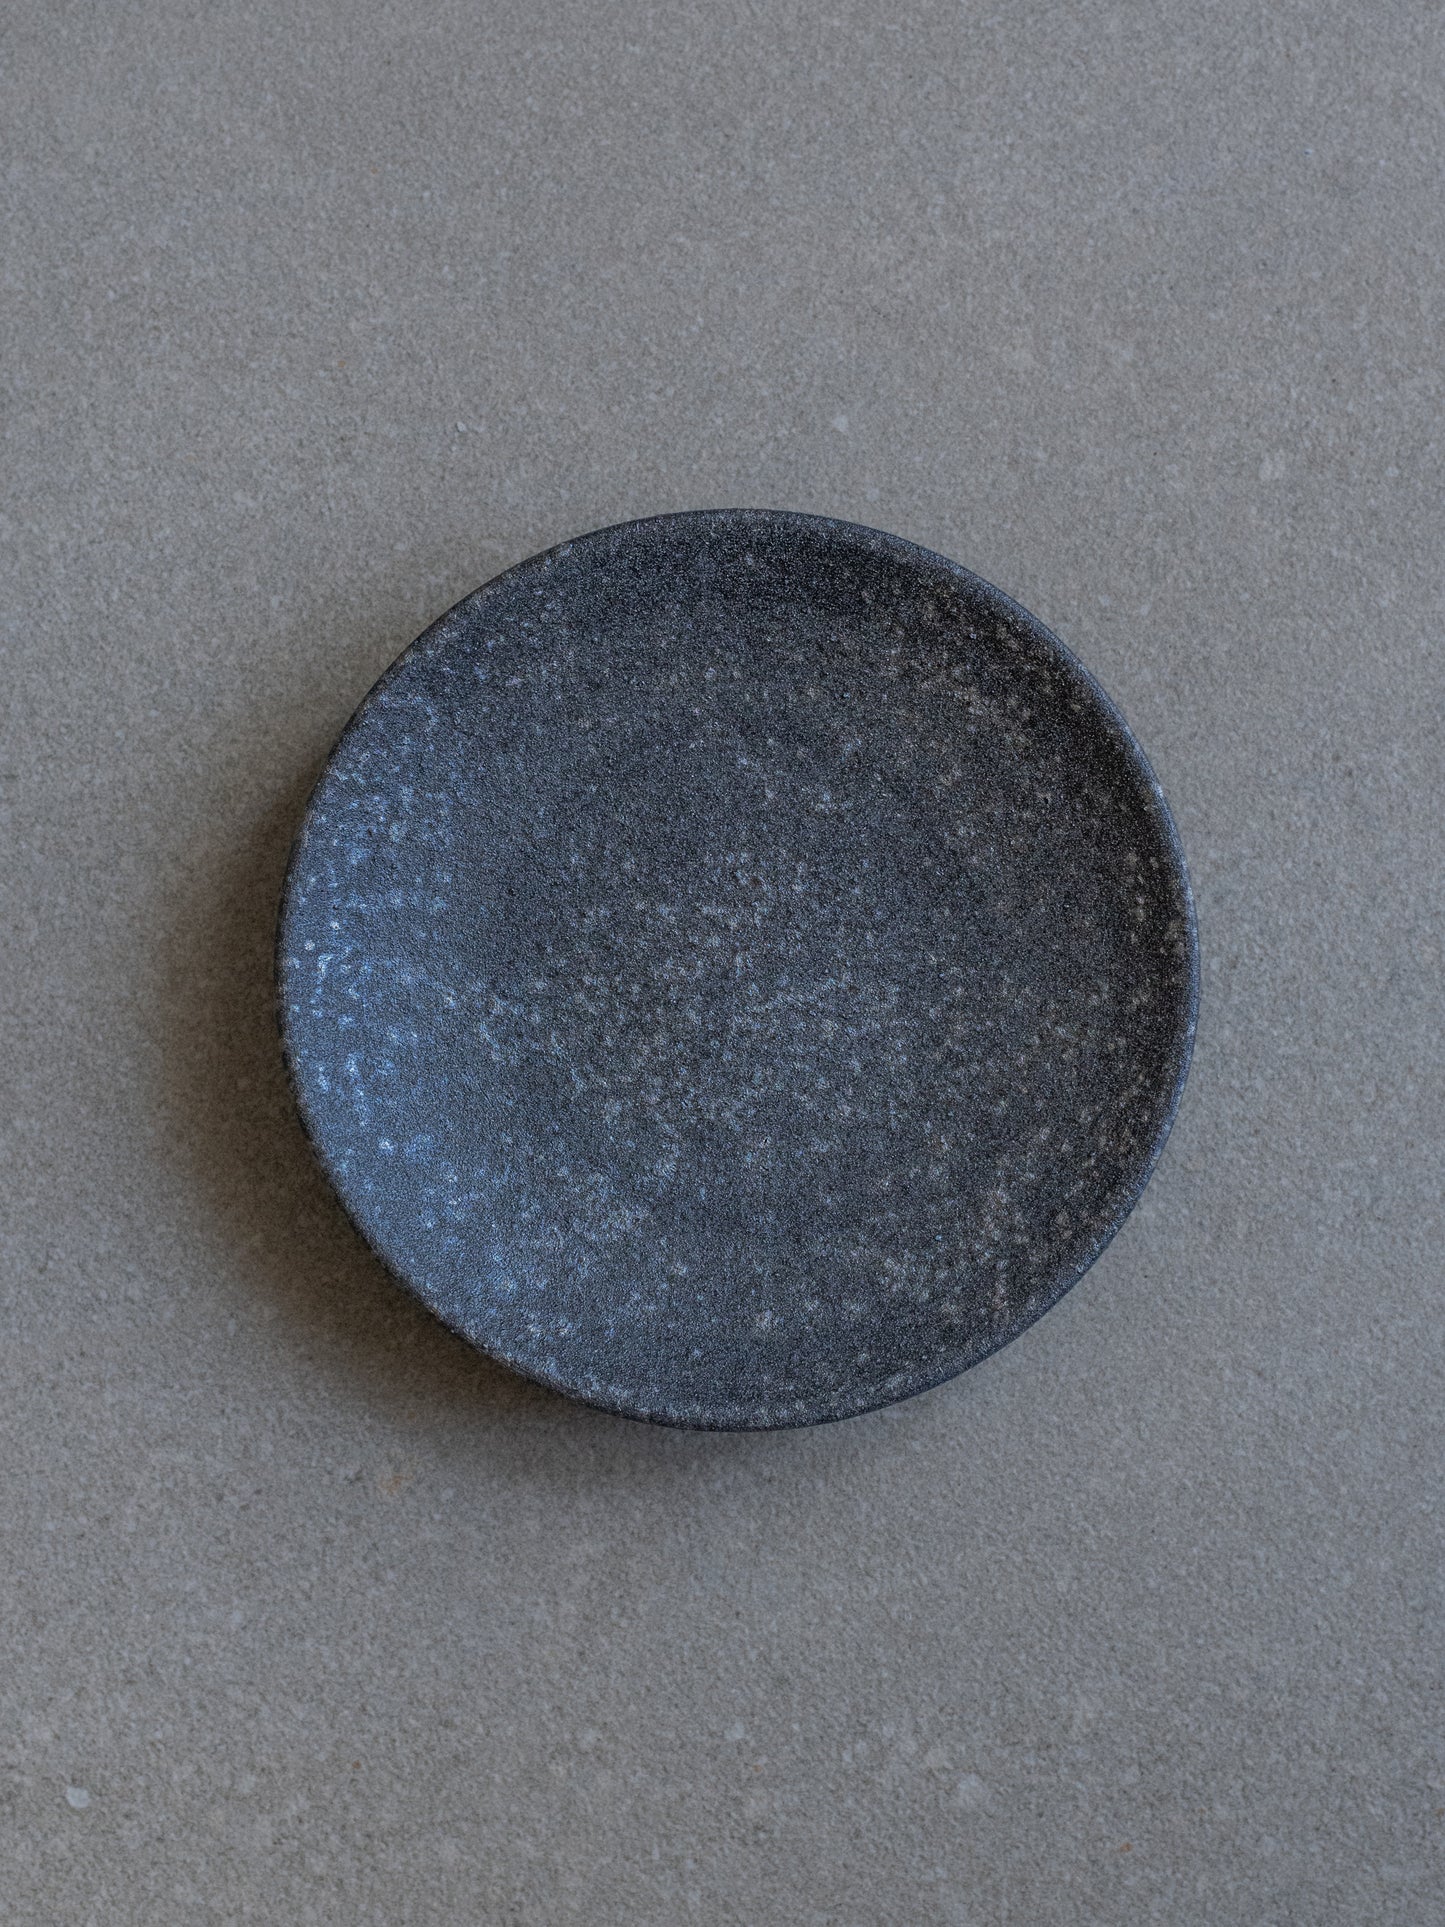 Shigaraki Plate II